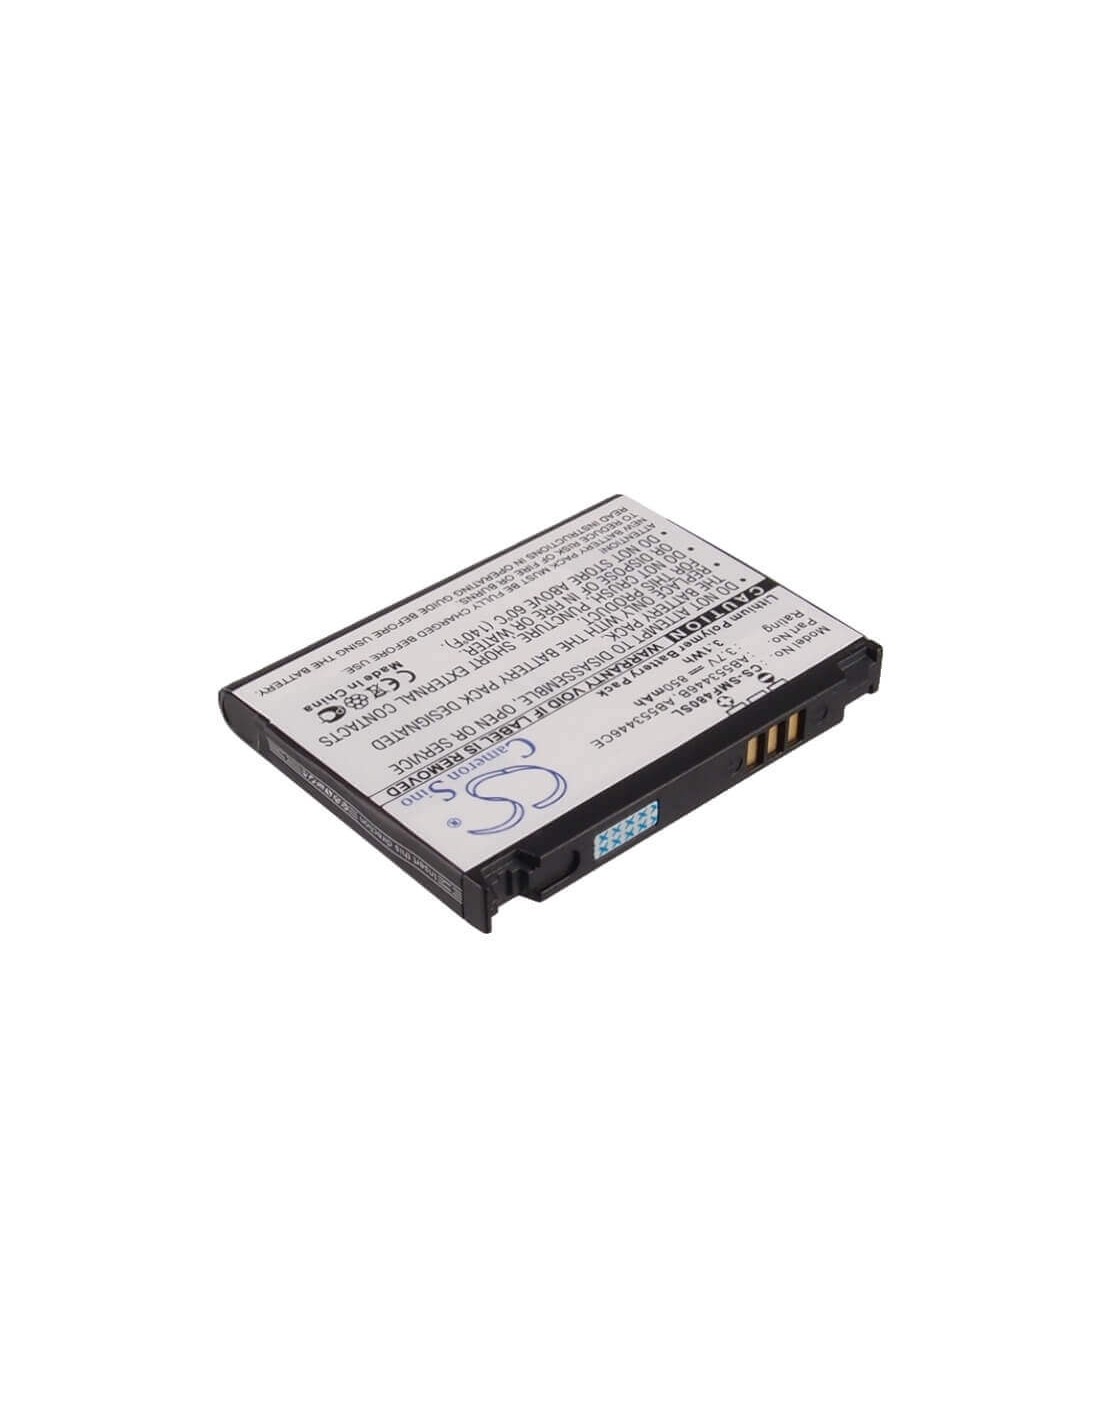 Battery for Samsung SGH-A767, SGH-A767 PROPEL, SGH-F480 3.7V, 850mAh - 3.15Wh